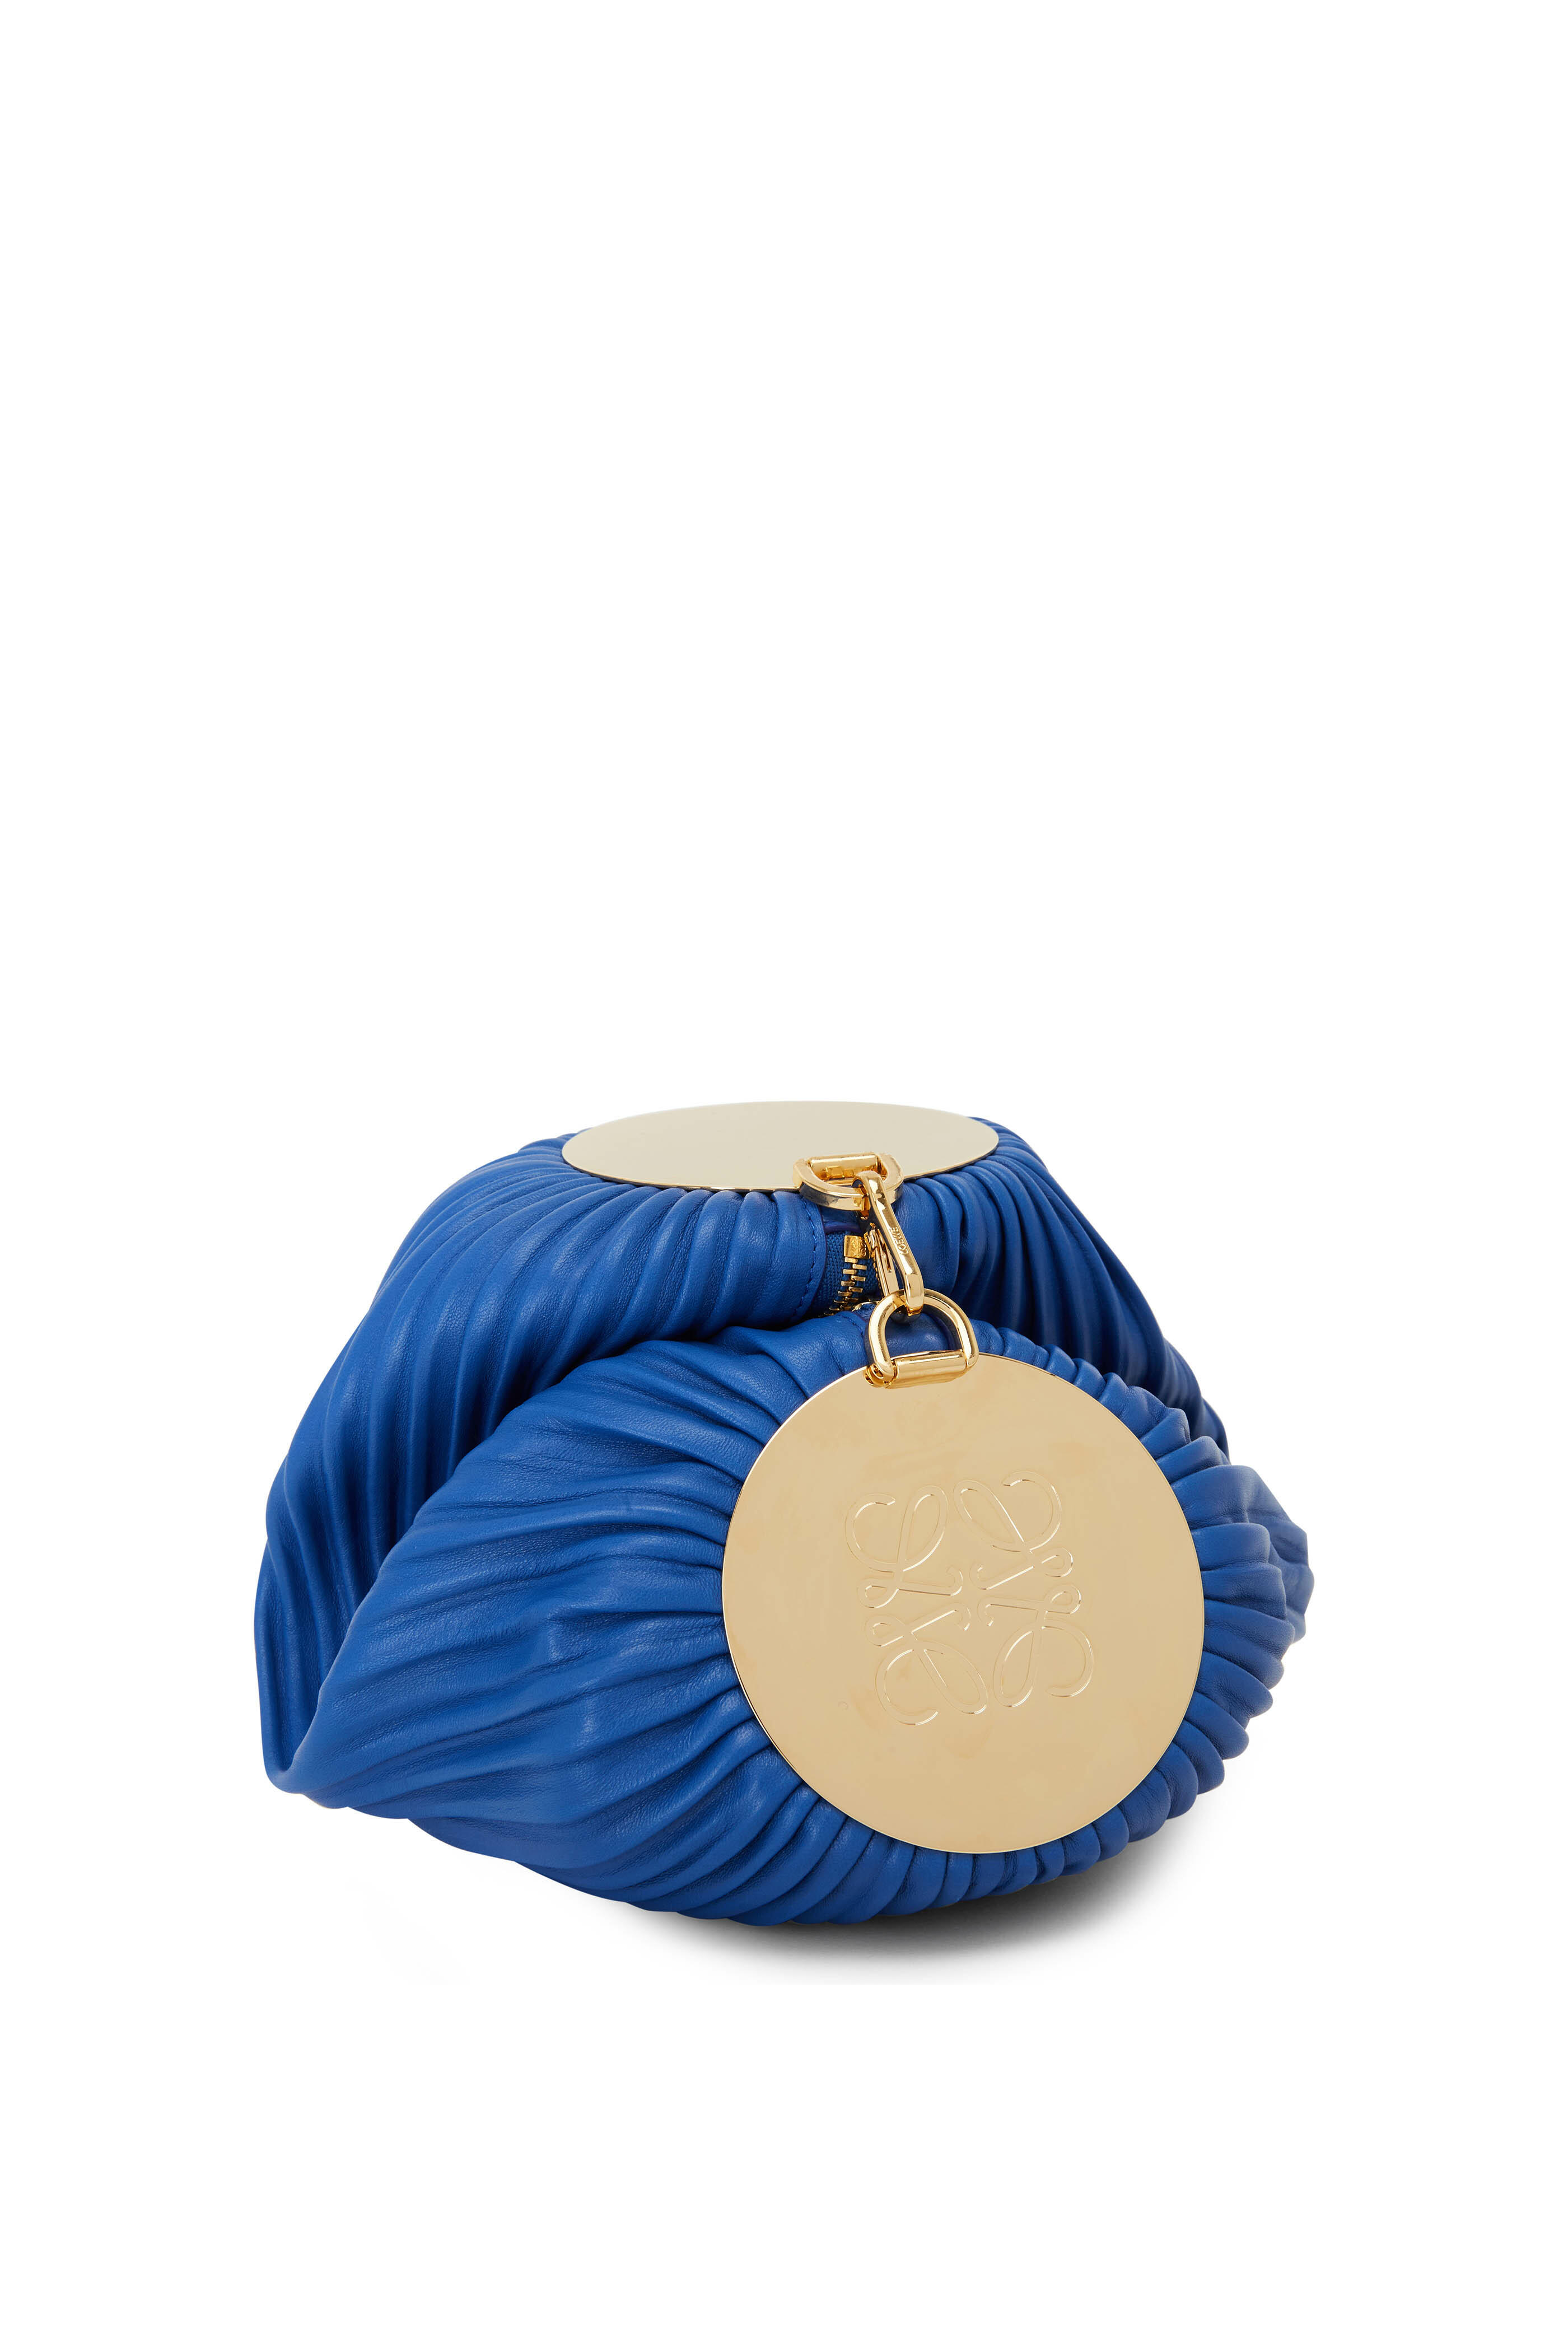 Bracelet leather shoulder bag in blue - Loewe